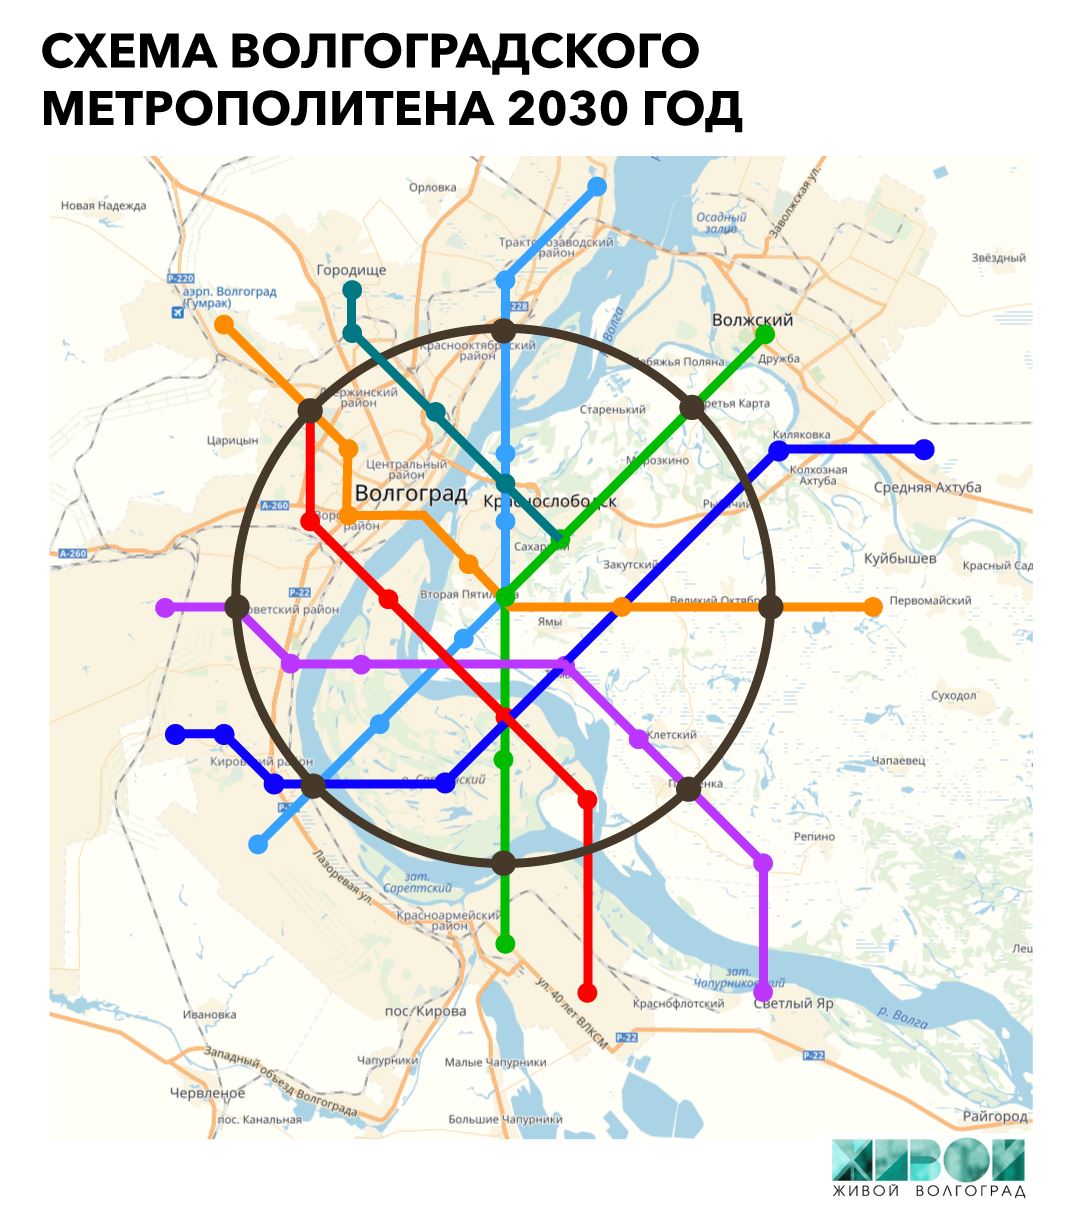 Будущий план метро. Карта метро 2030 Москва схема. Схема метро 2030 год Москва. Схема Московского метрополитена 2030 года. Московский метрополитен в 2030 году.